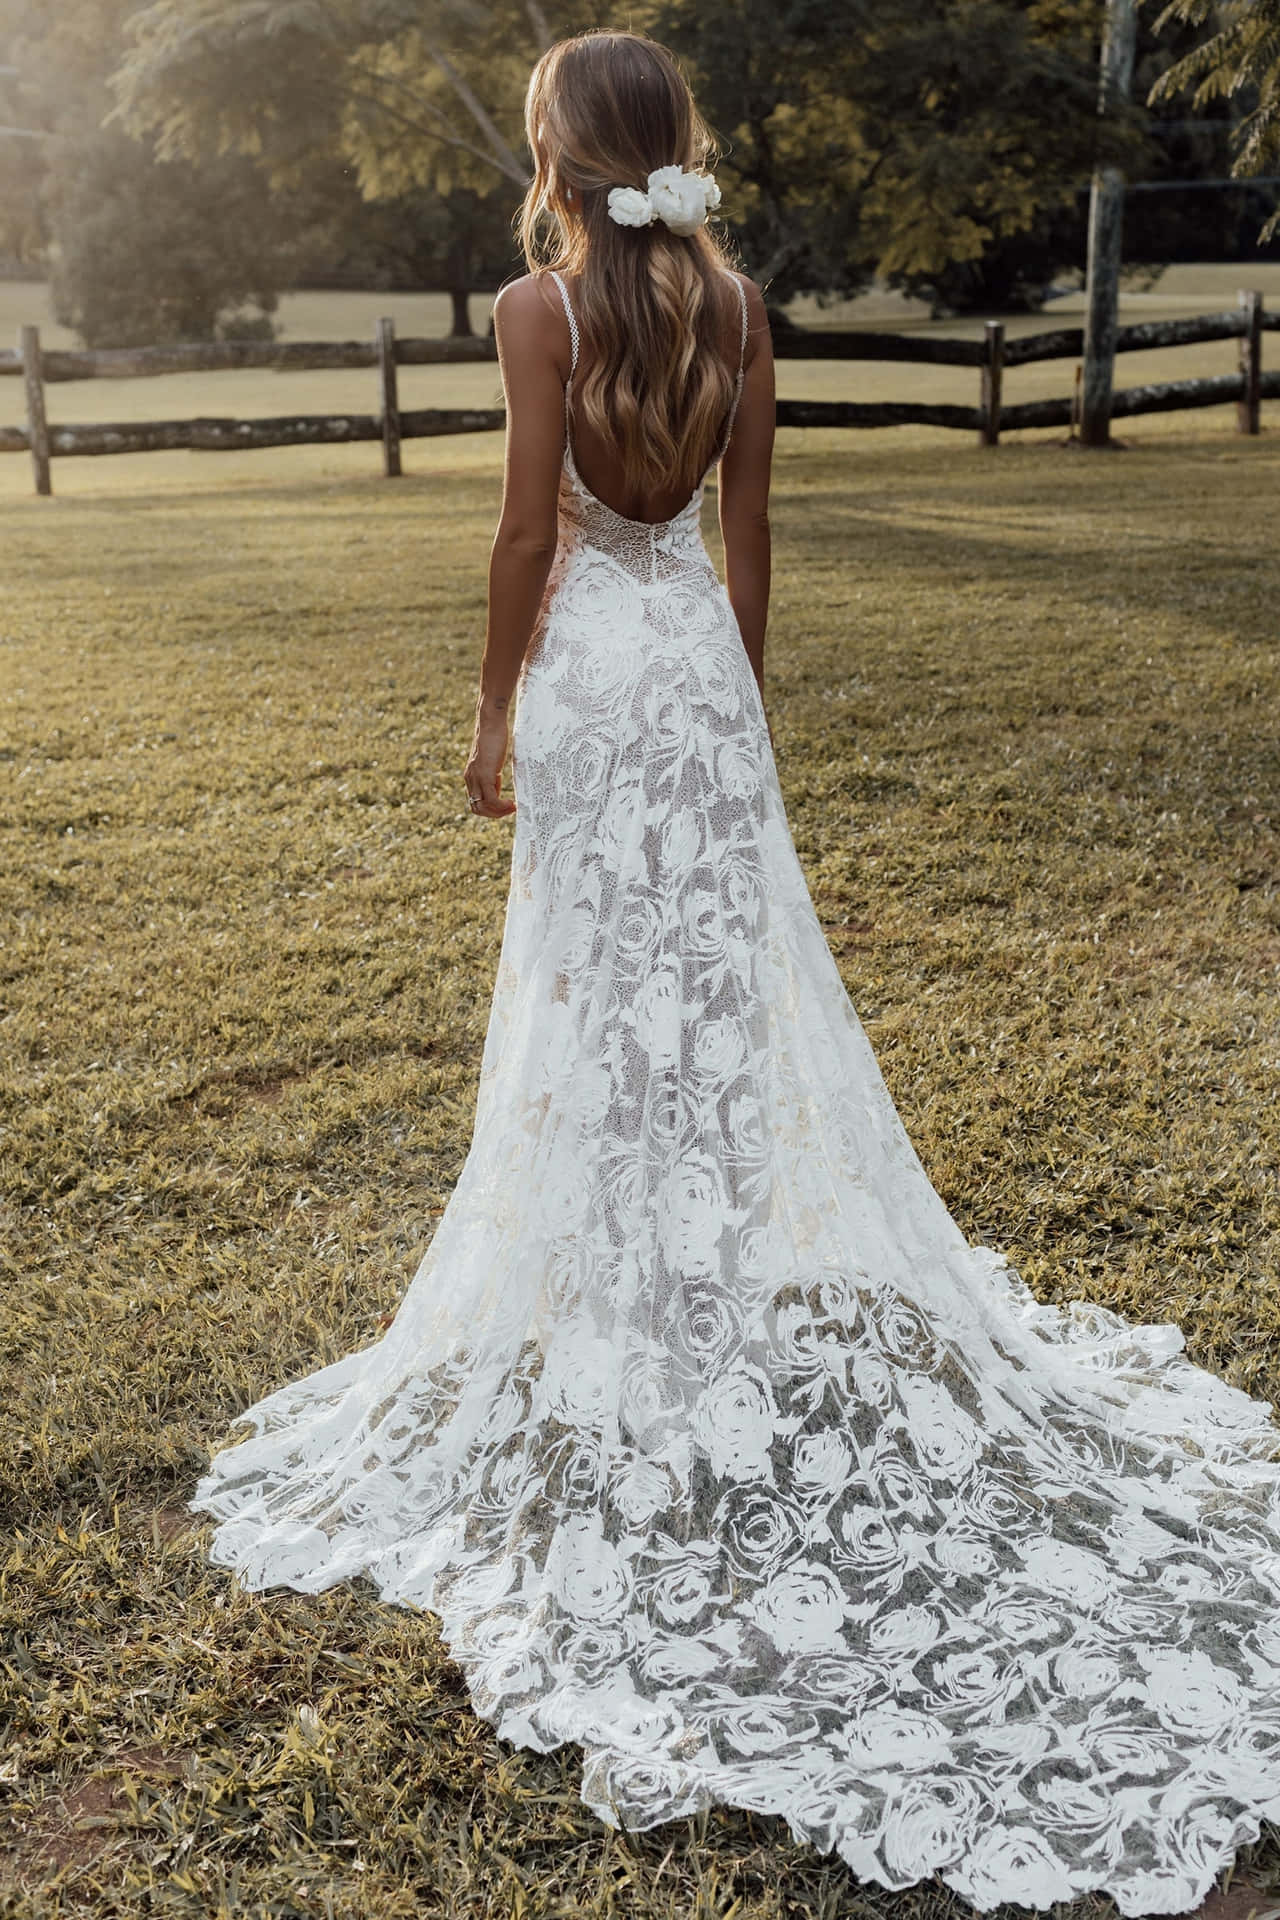 Einefrau In Einem Weißen Hochzeitskleid Steht Auf Einem Feld.